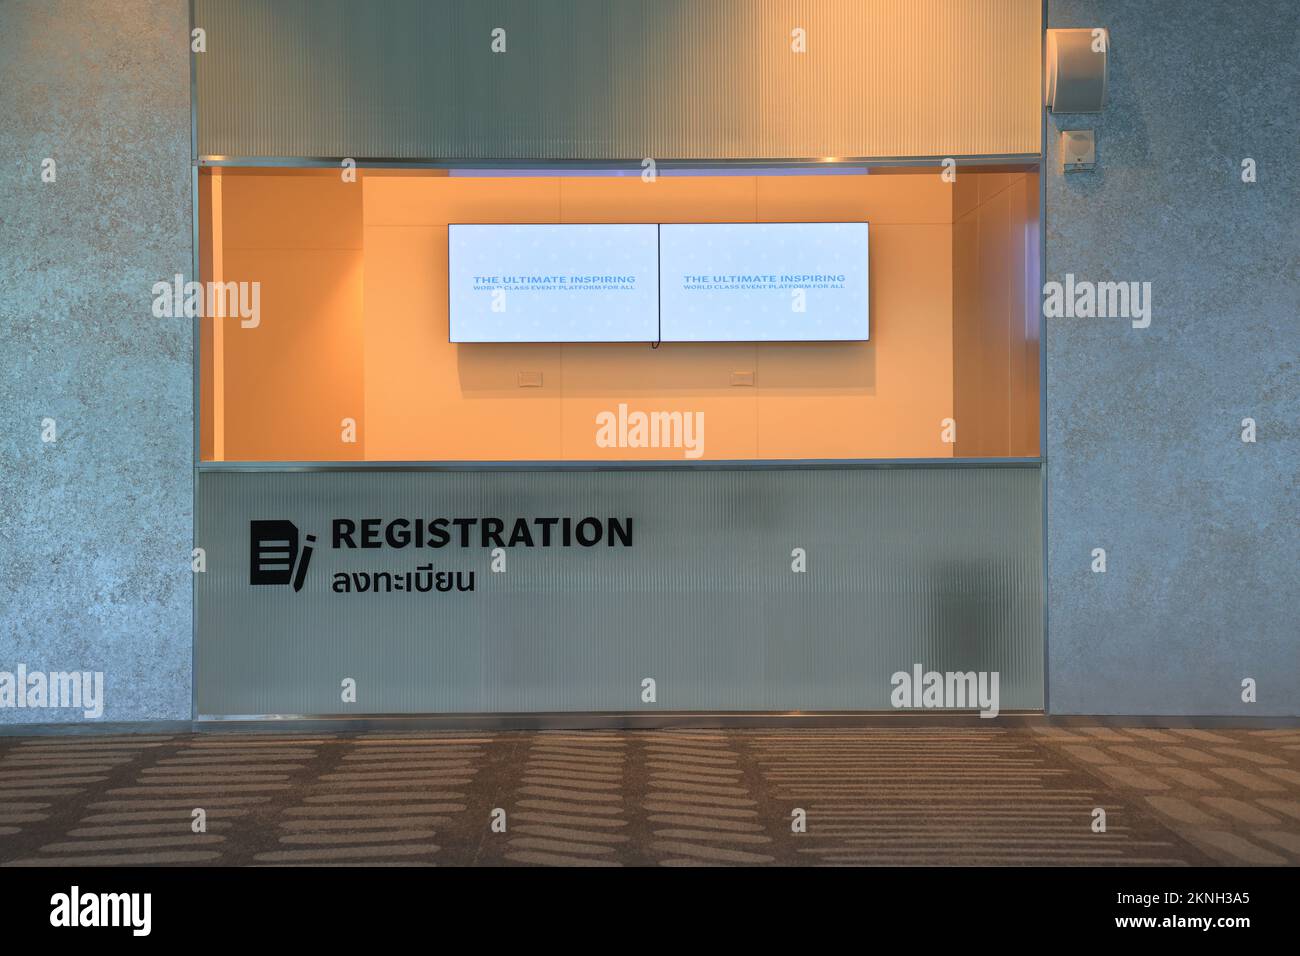 banco ricevimento nella lobby, banco registrazione davanti al centro conferenze. Foto Stock